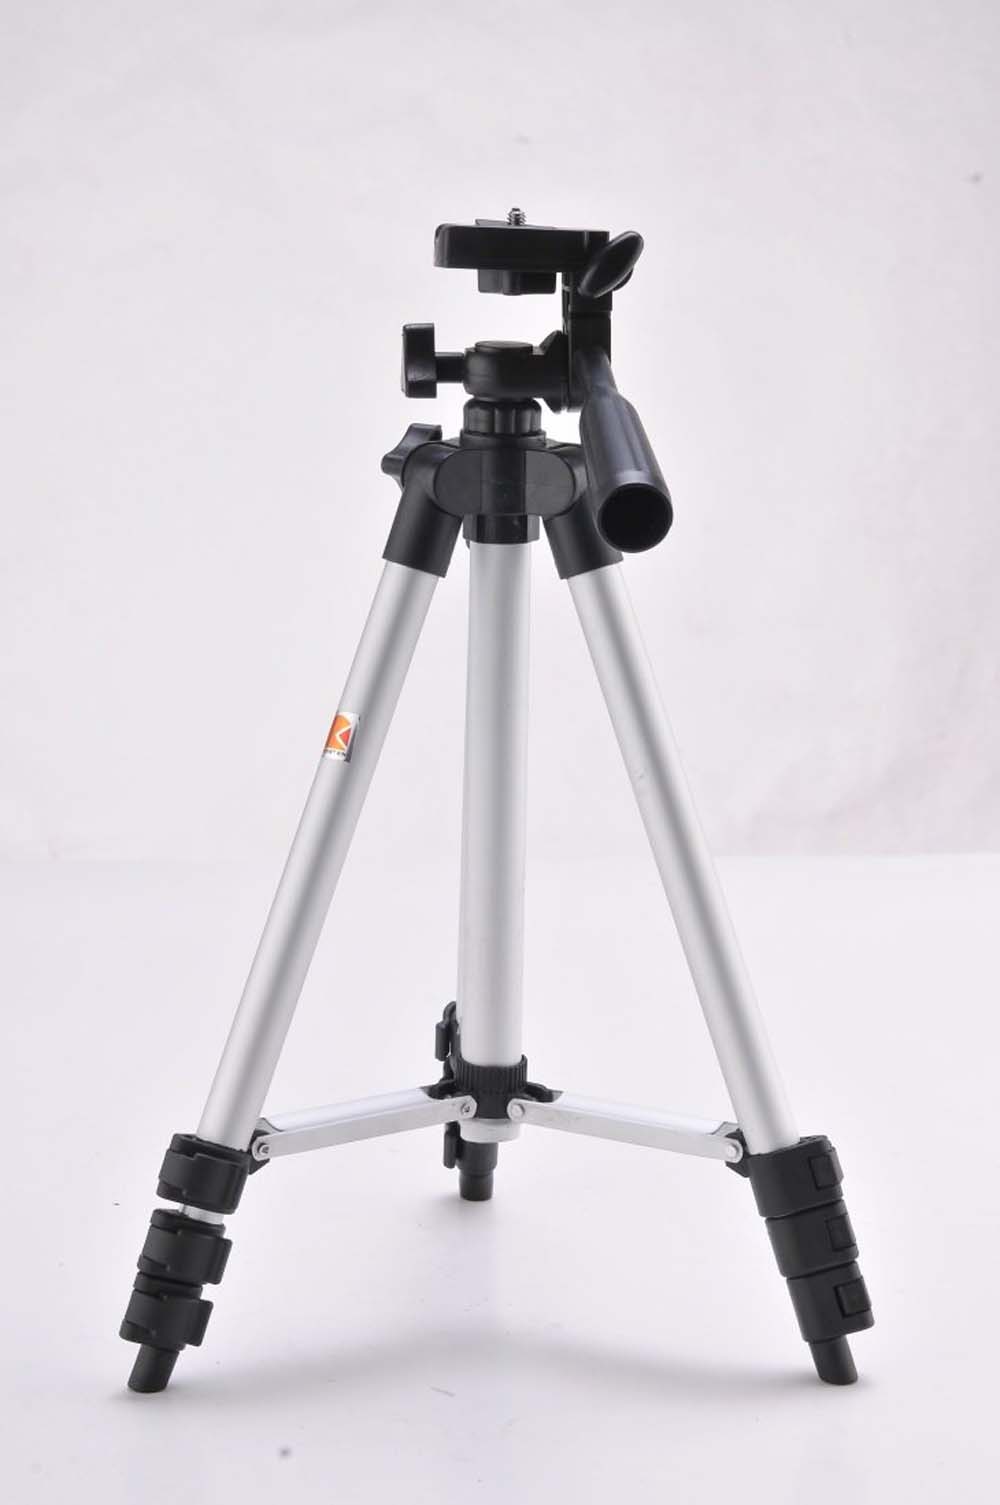 Trépied, pied photo pour appareil photo - avec étui, 48-130 cm, max. 3 kg